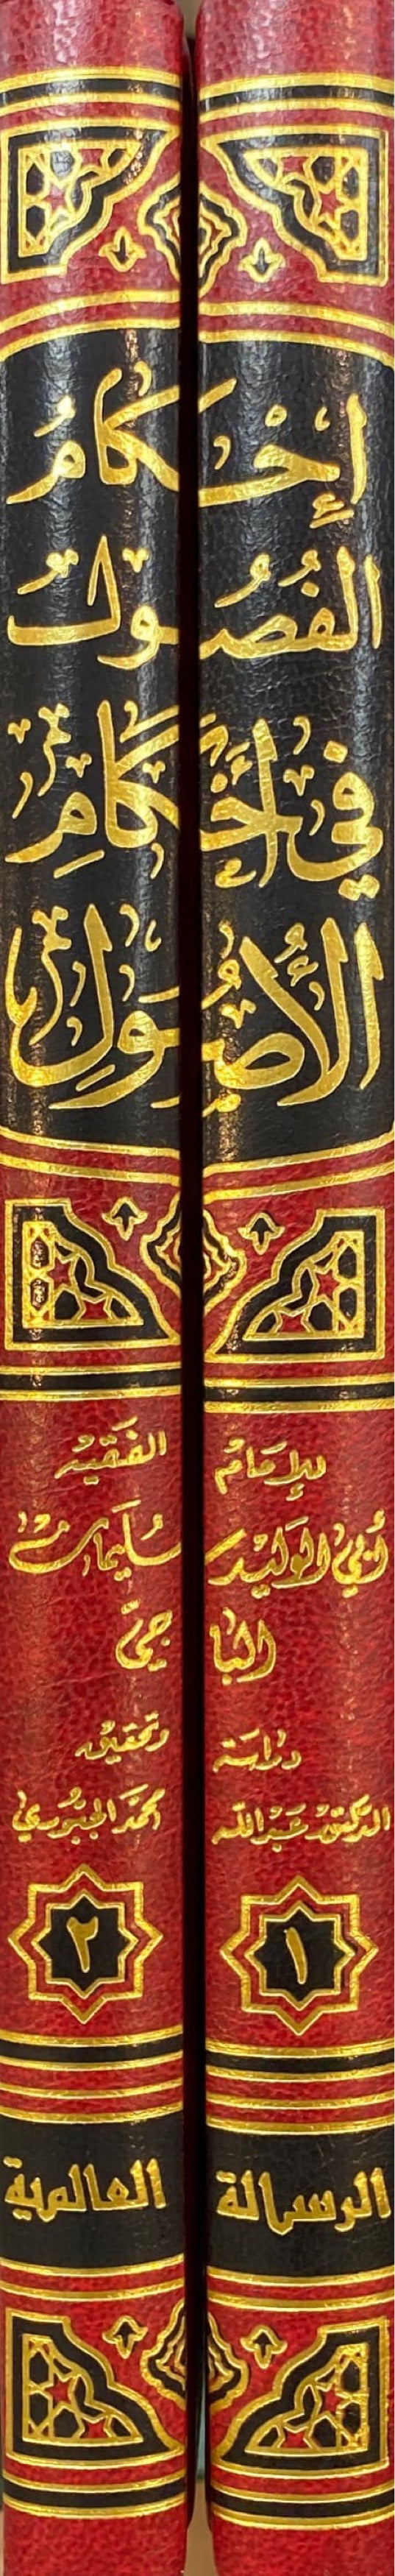 احكام الفصول في احكام الاصول     Ahkam Al Fusul Fi Ahkamul Usul (2 Volume Set)